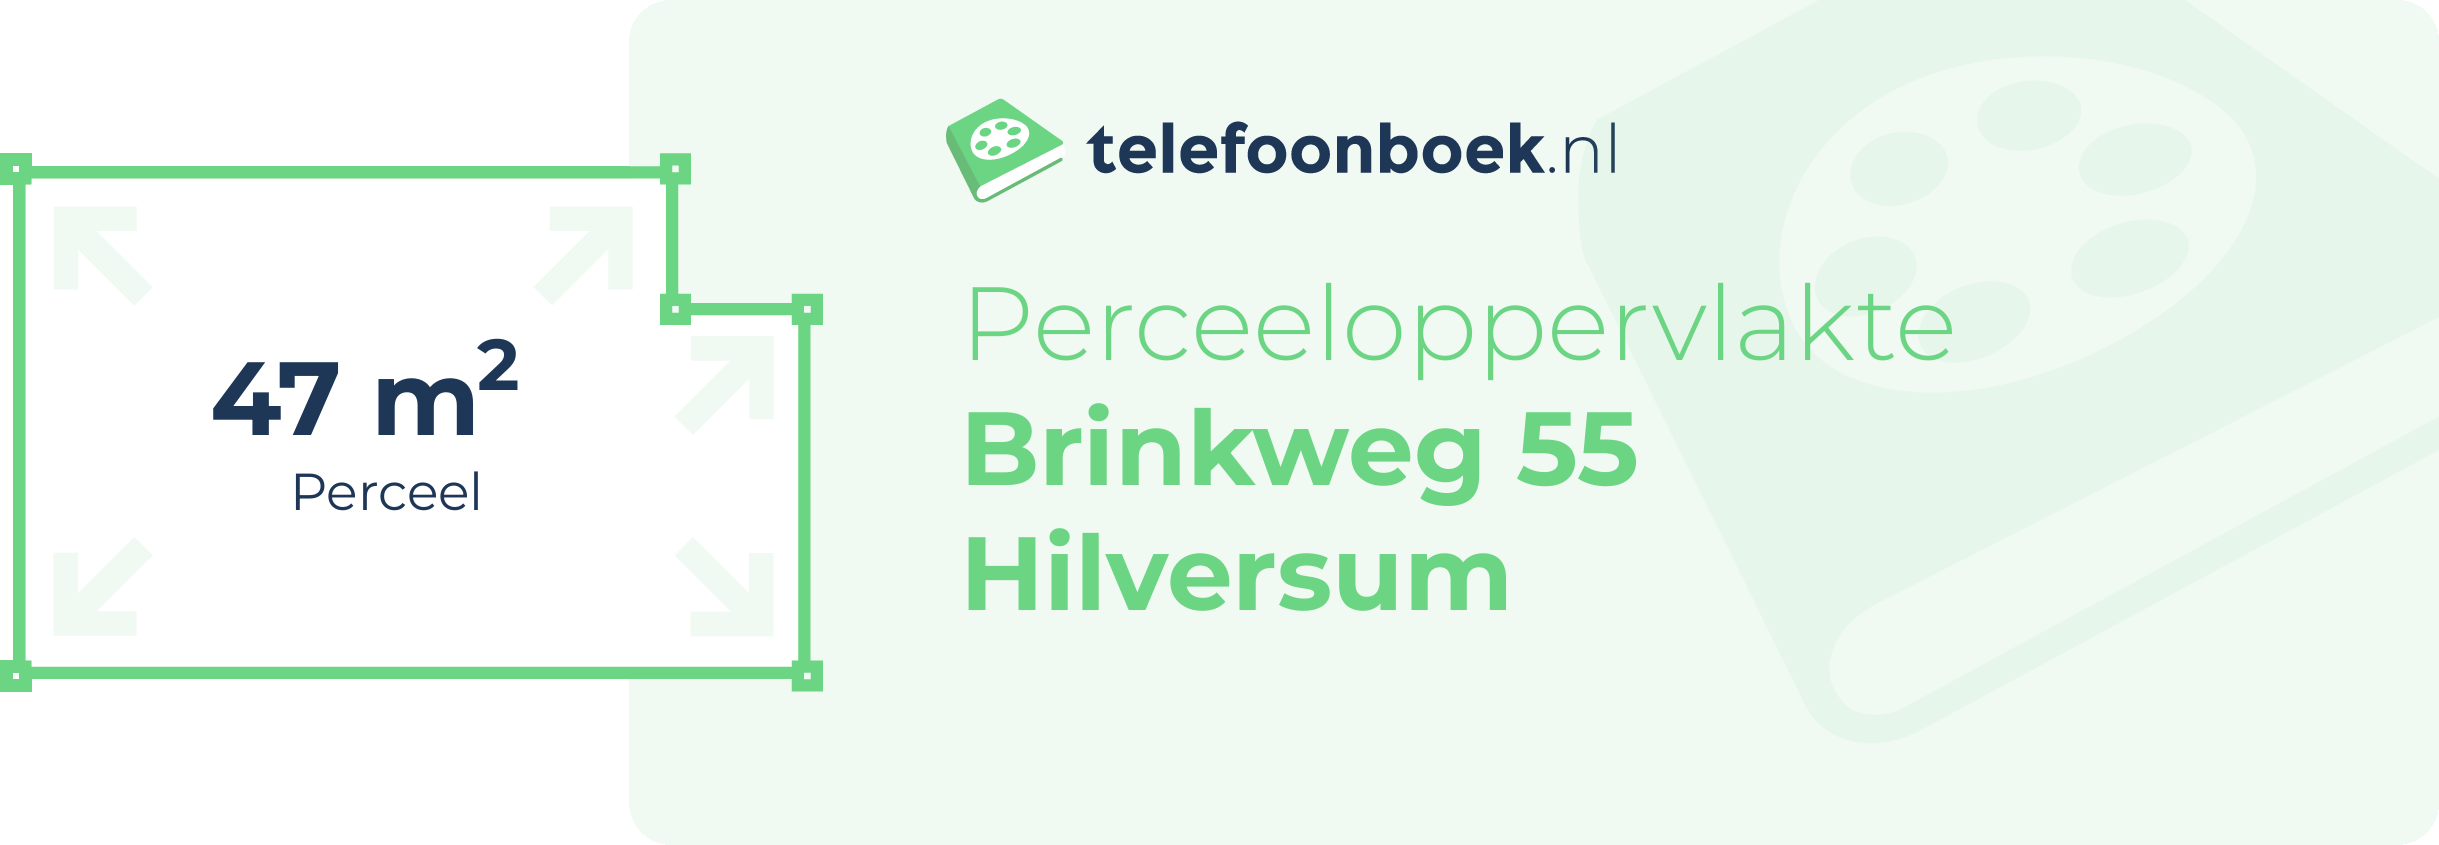 Perceeloppervlakte Brinkweg 55 Hilversum